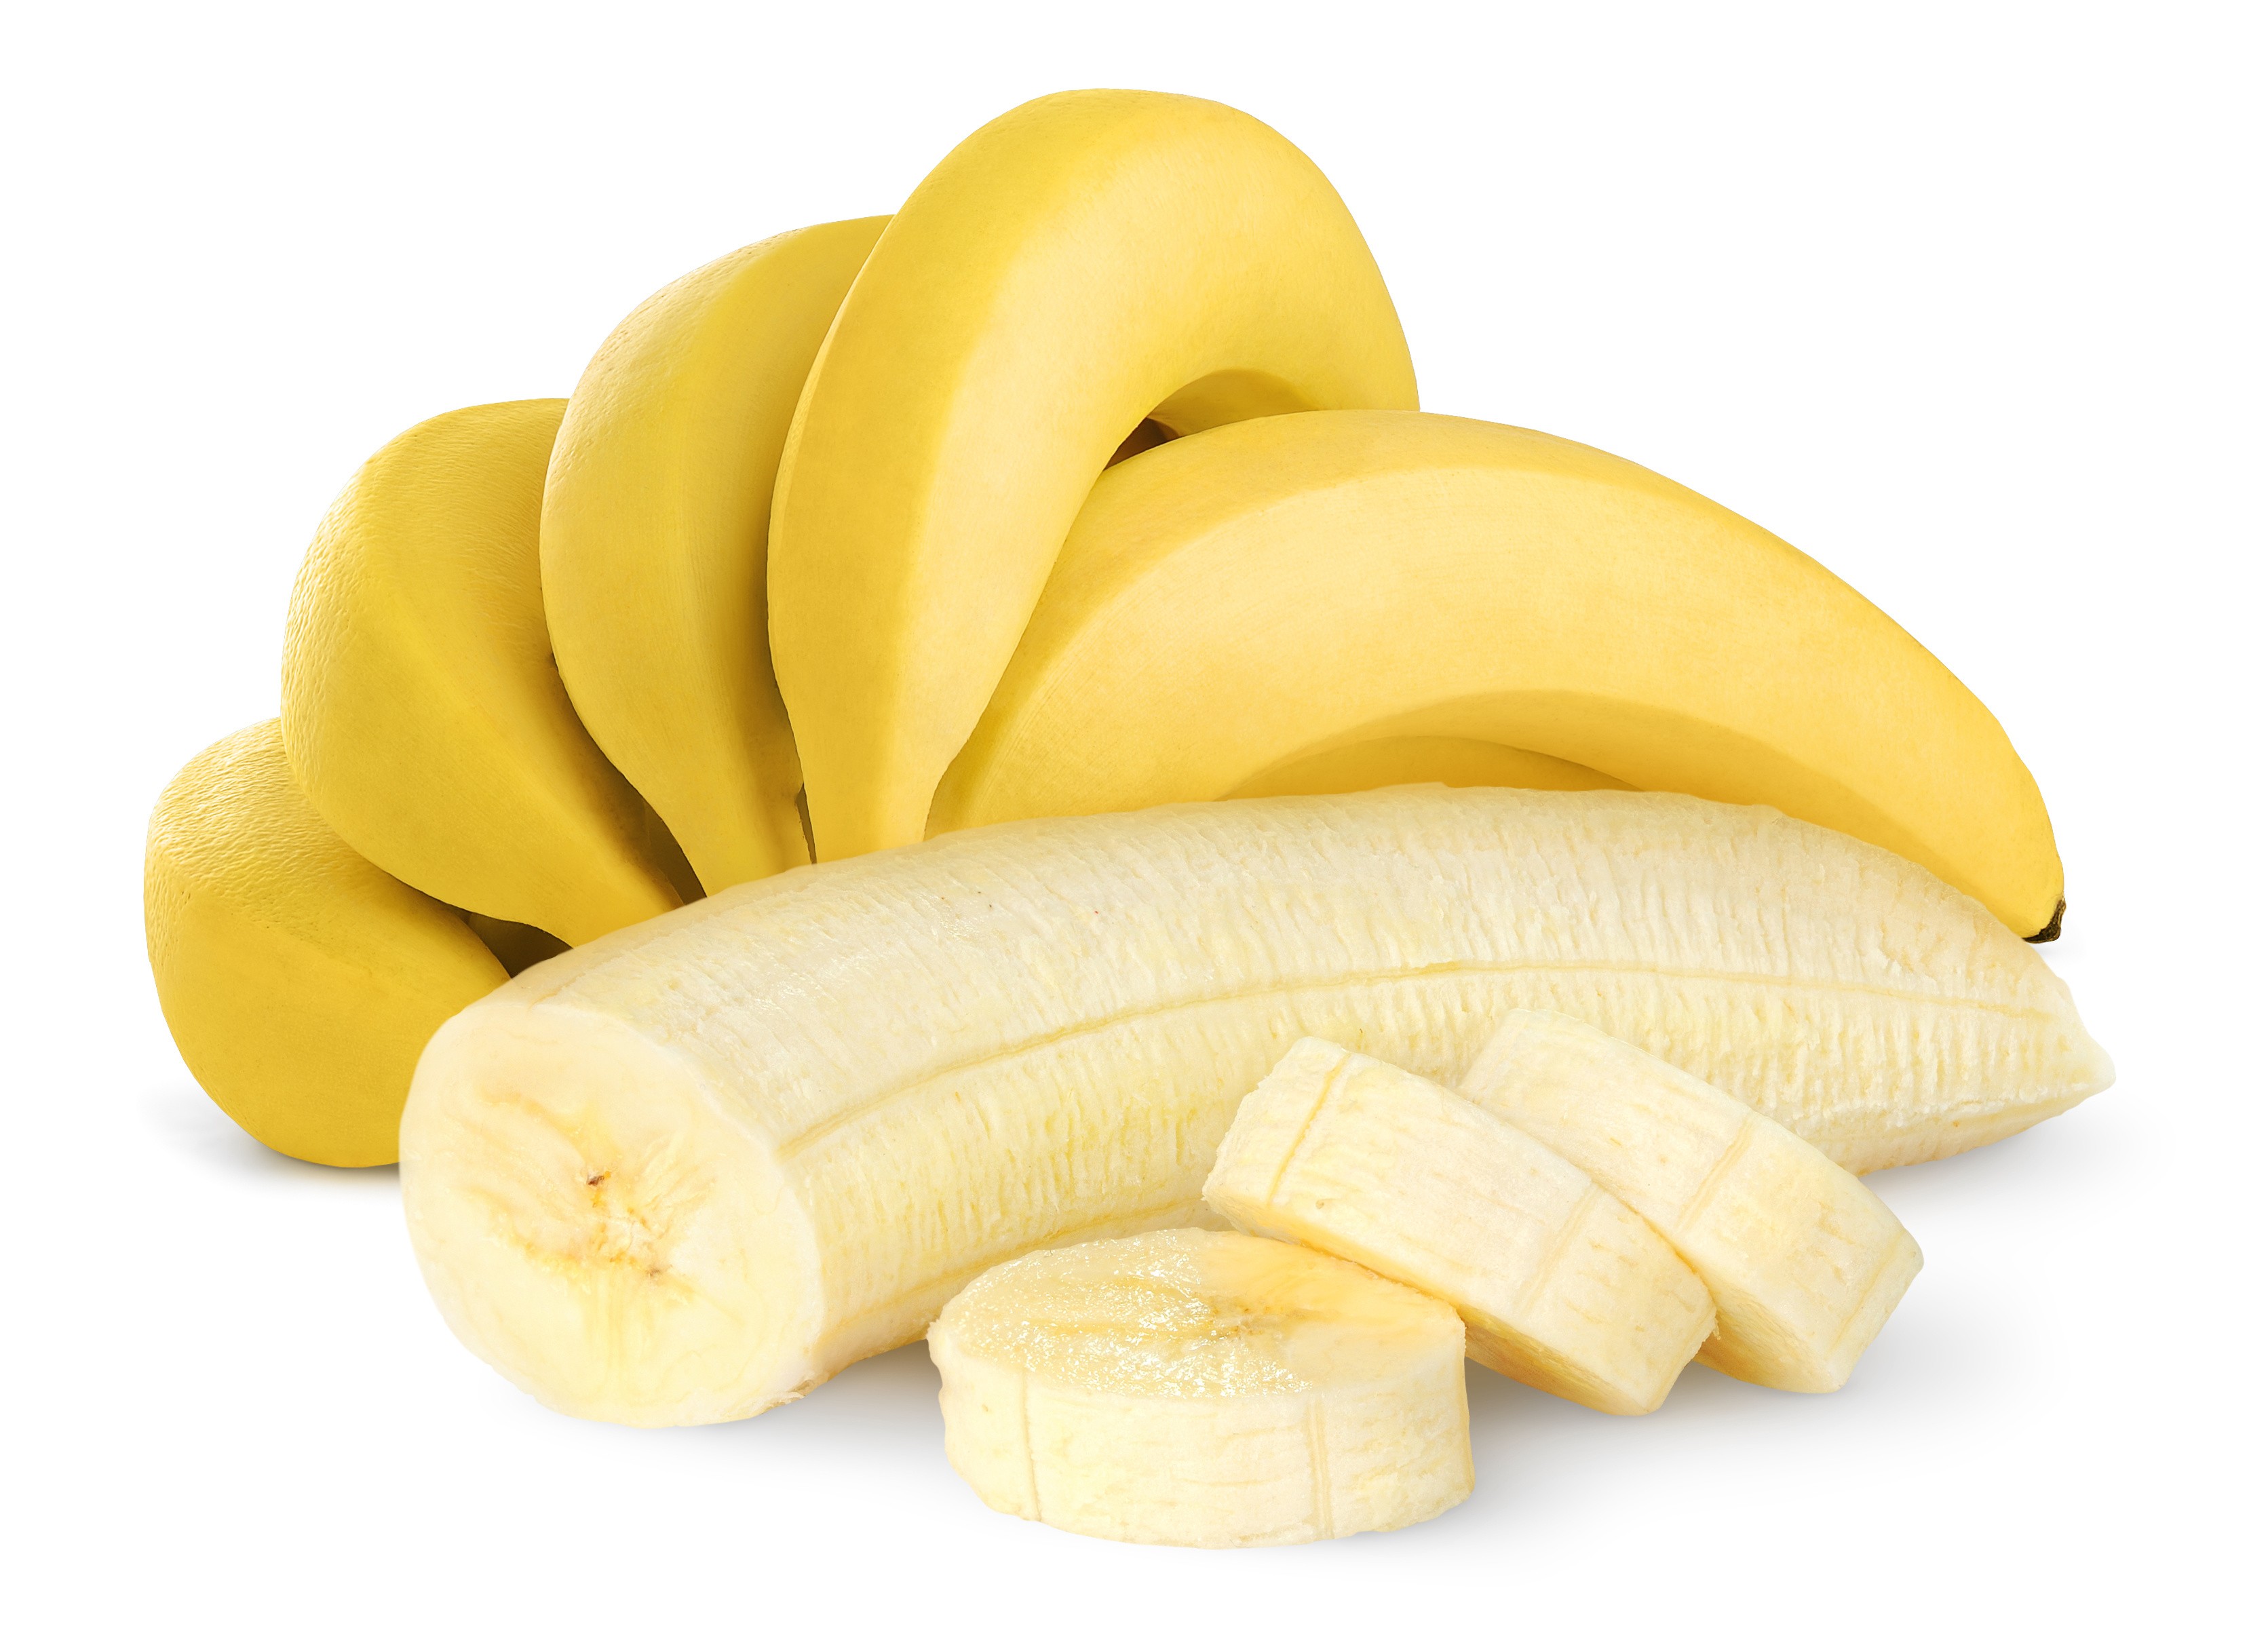 21 فائدةً مدهشة لتناول الموز